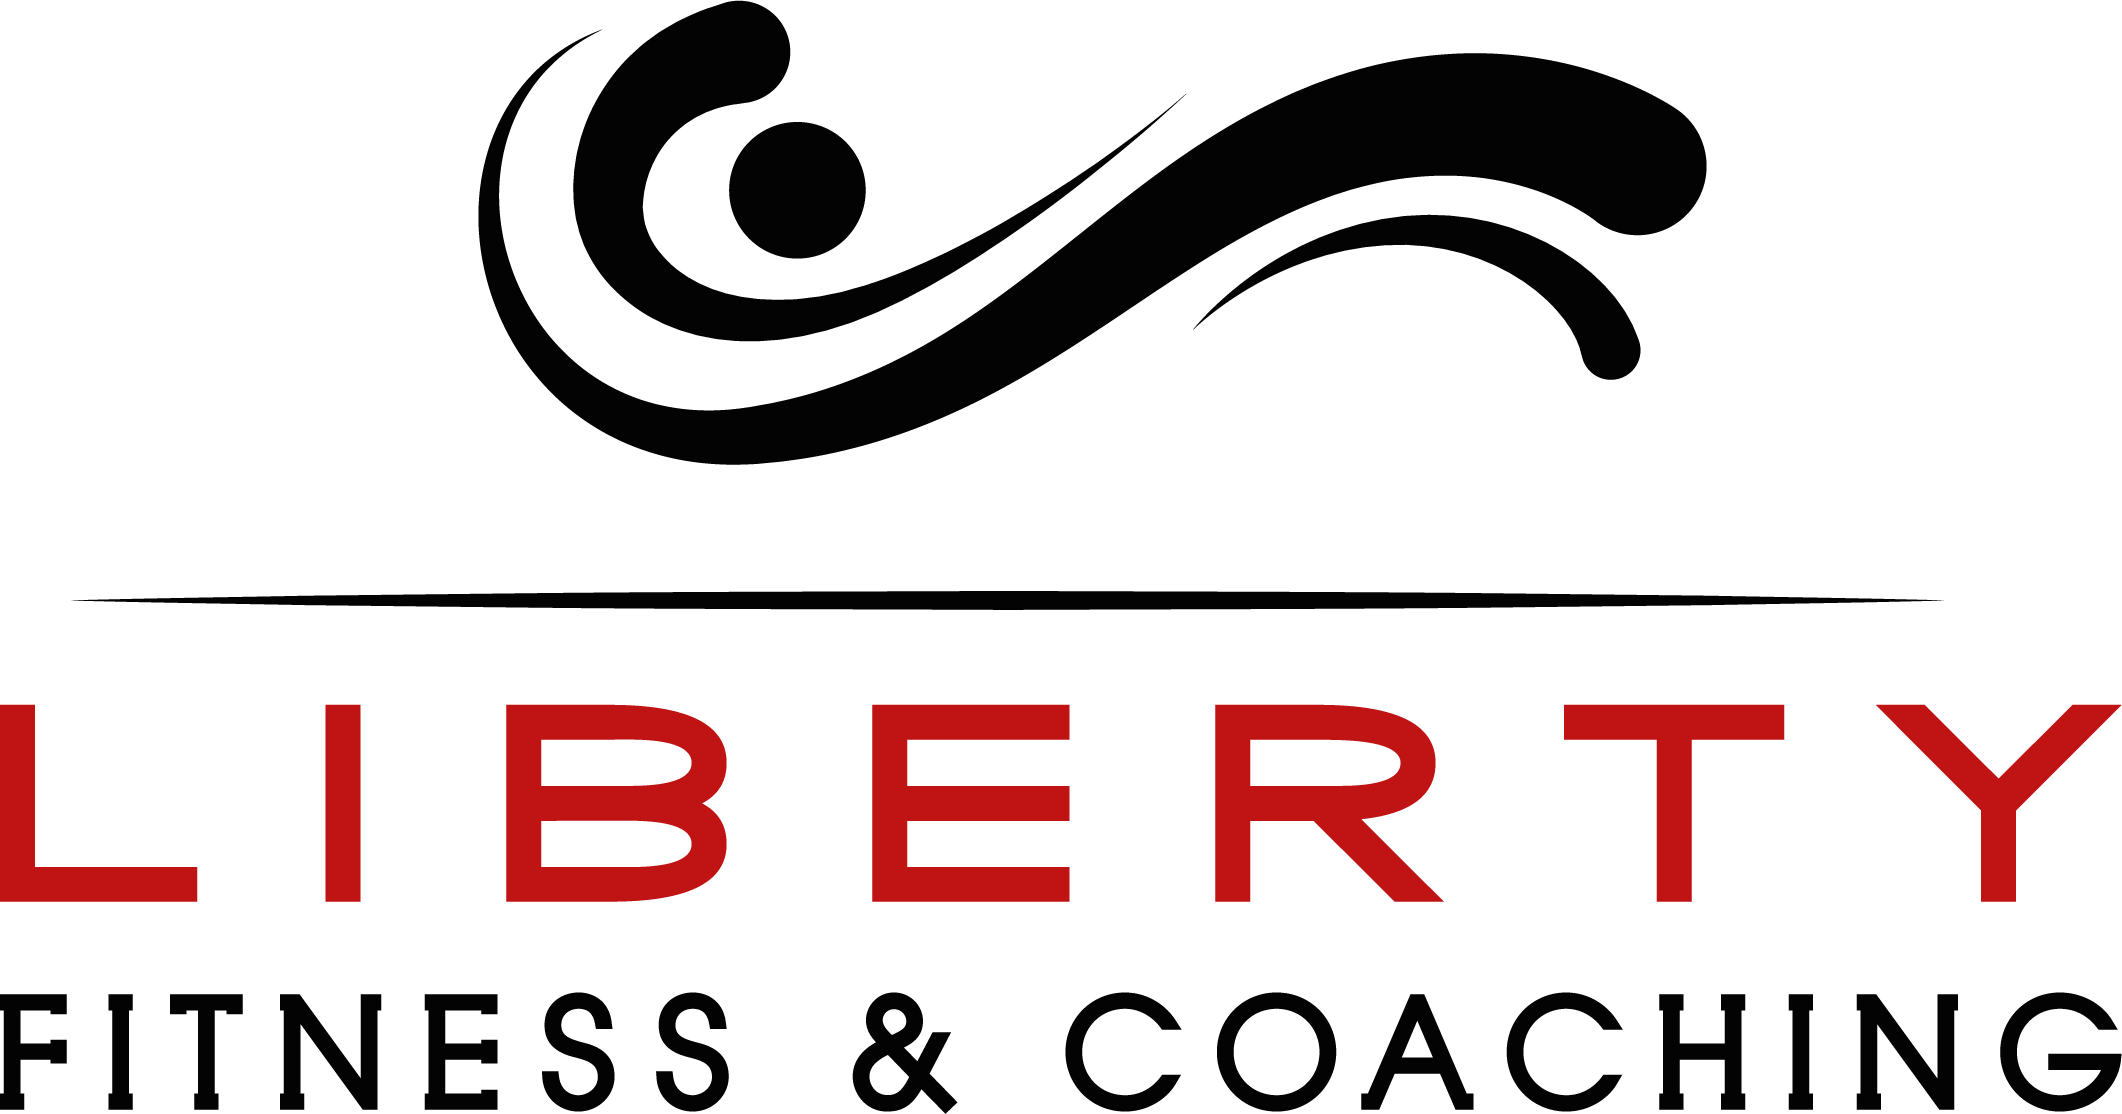 Liberty Fitness & Coaching